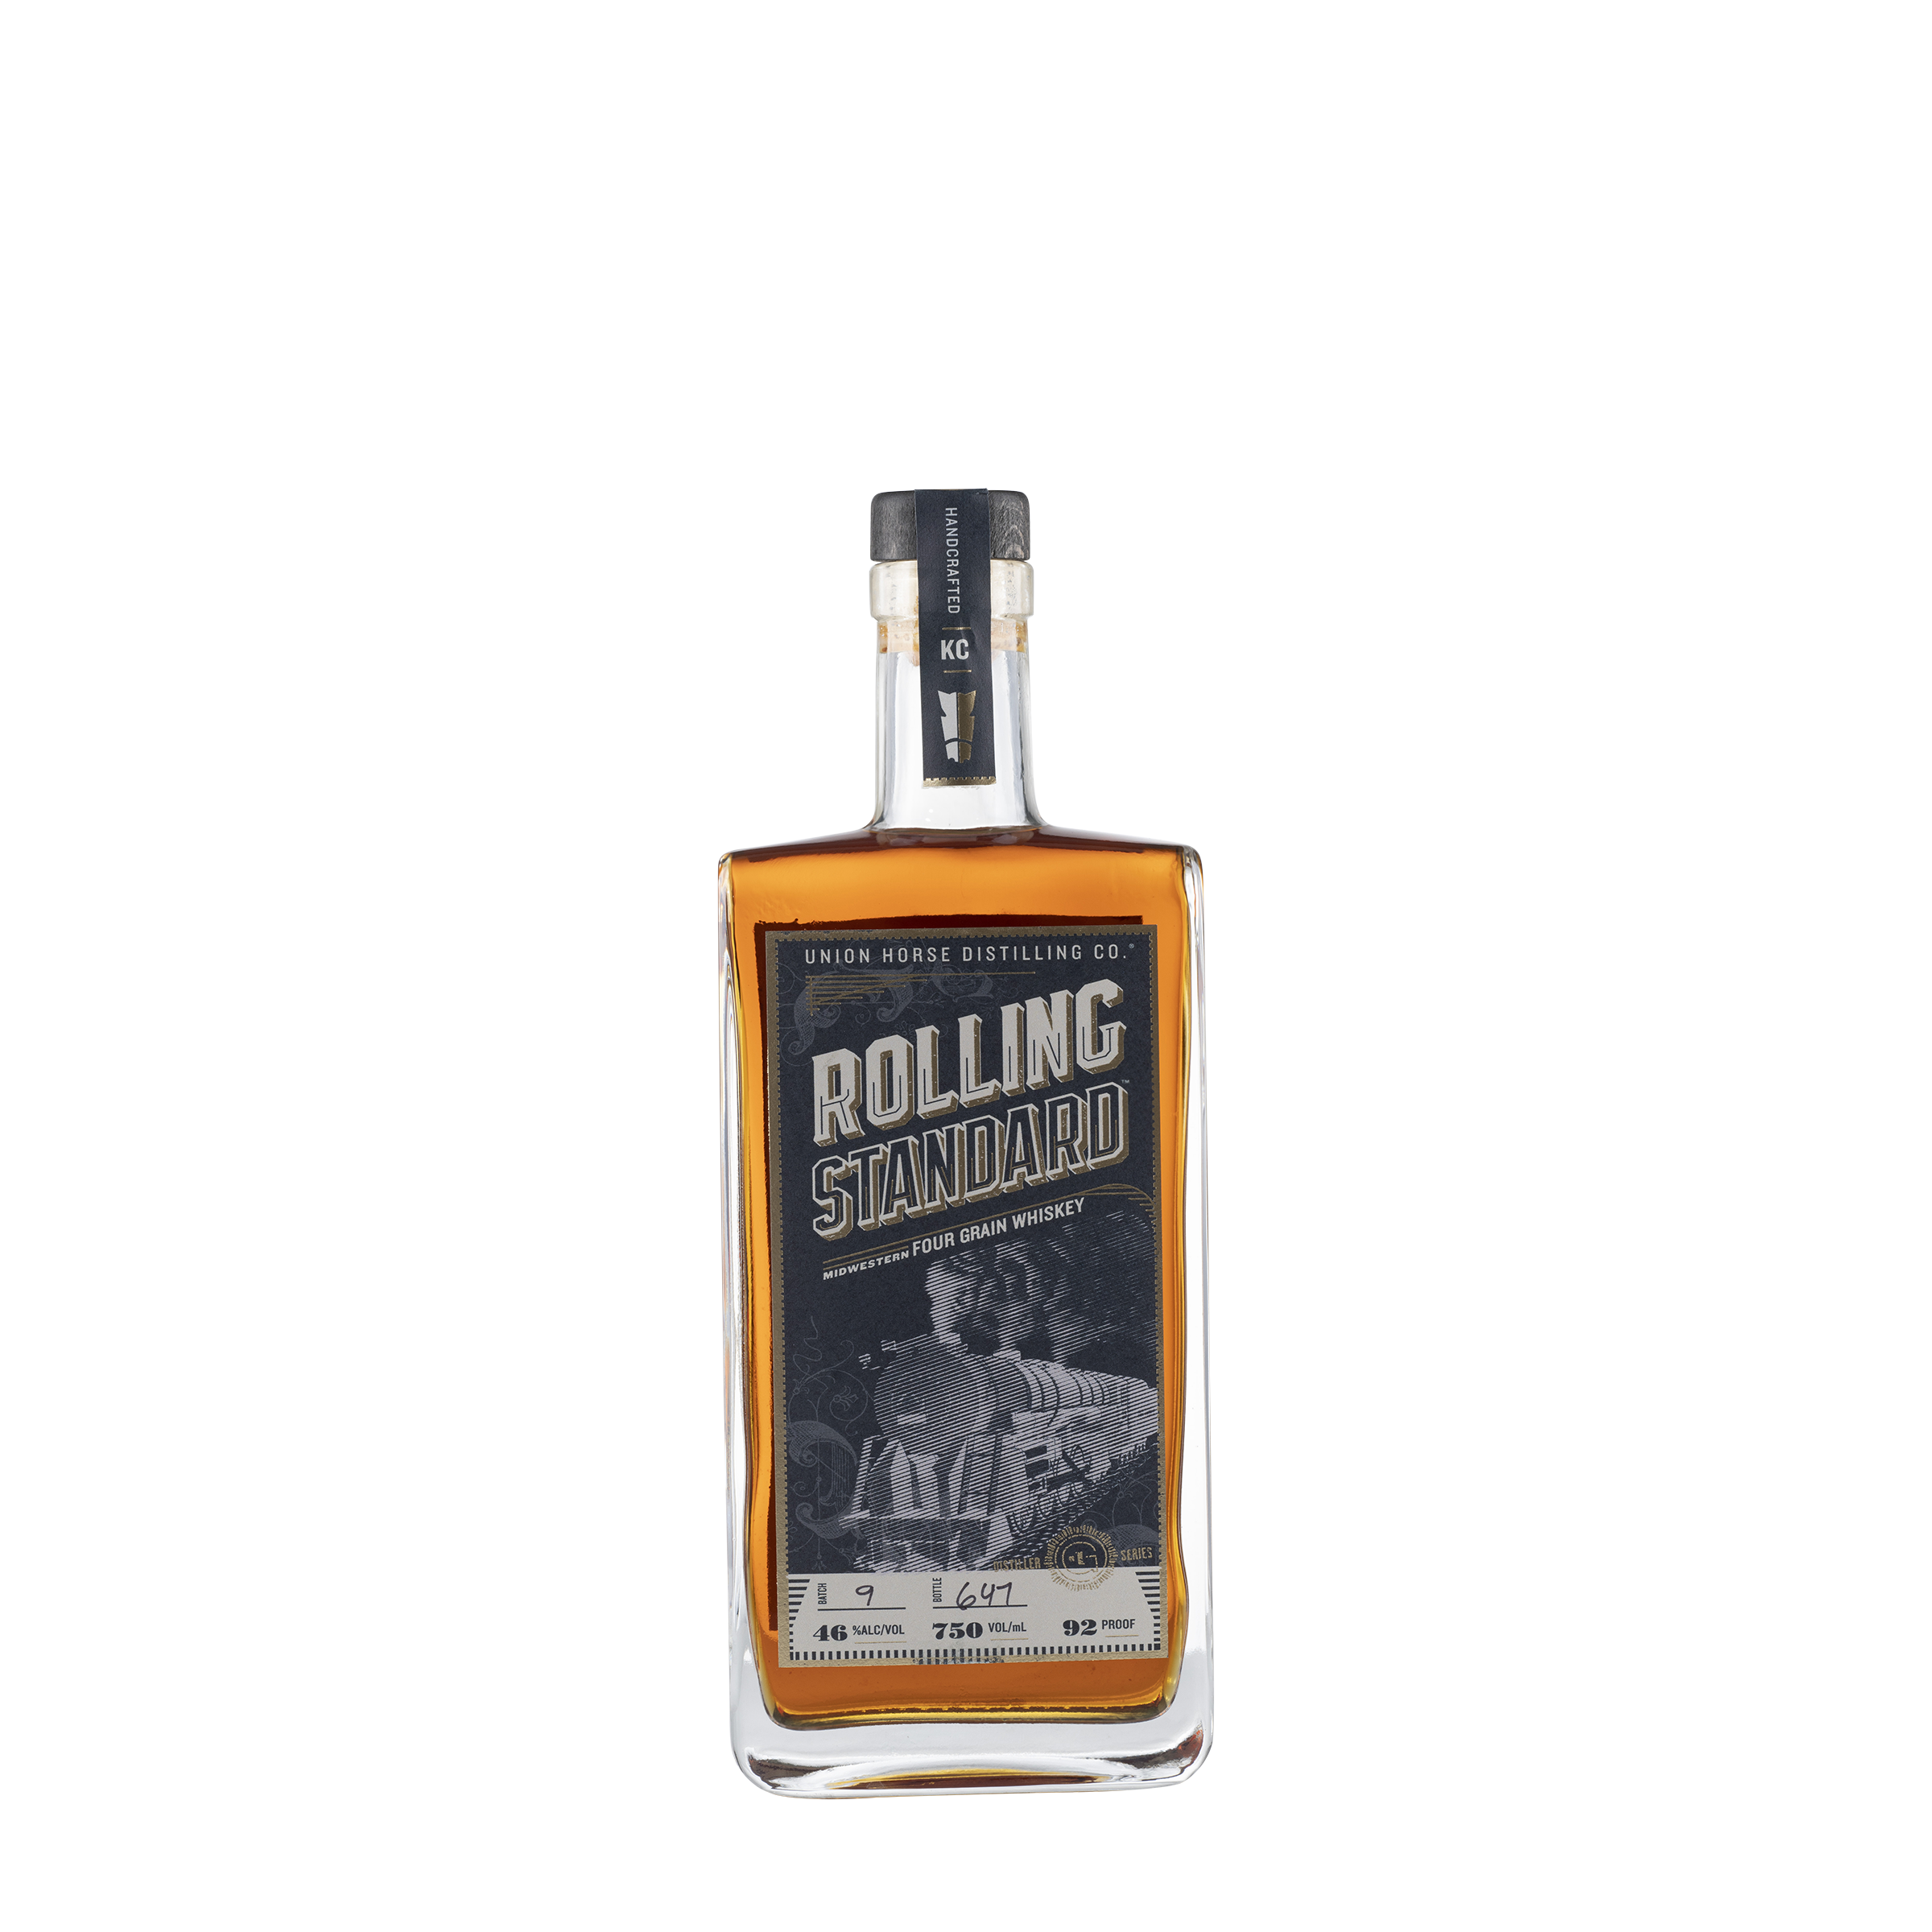 Distilling Co. Rolling Standard Four Grain Whisk NV Bottle Front